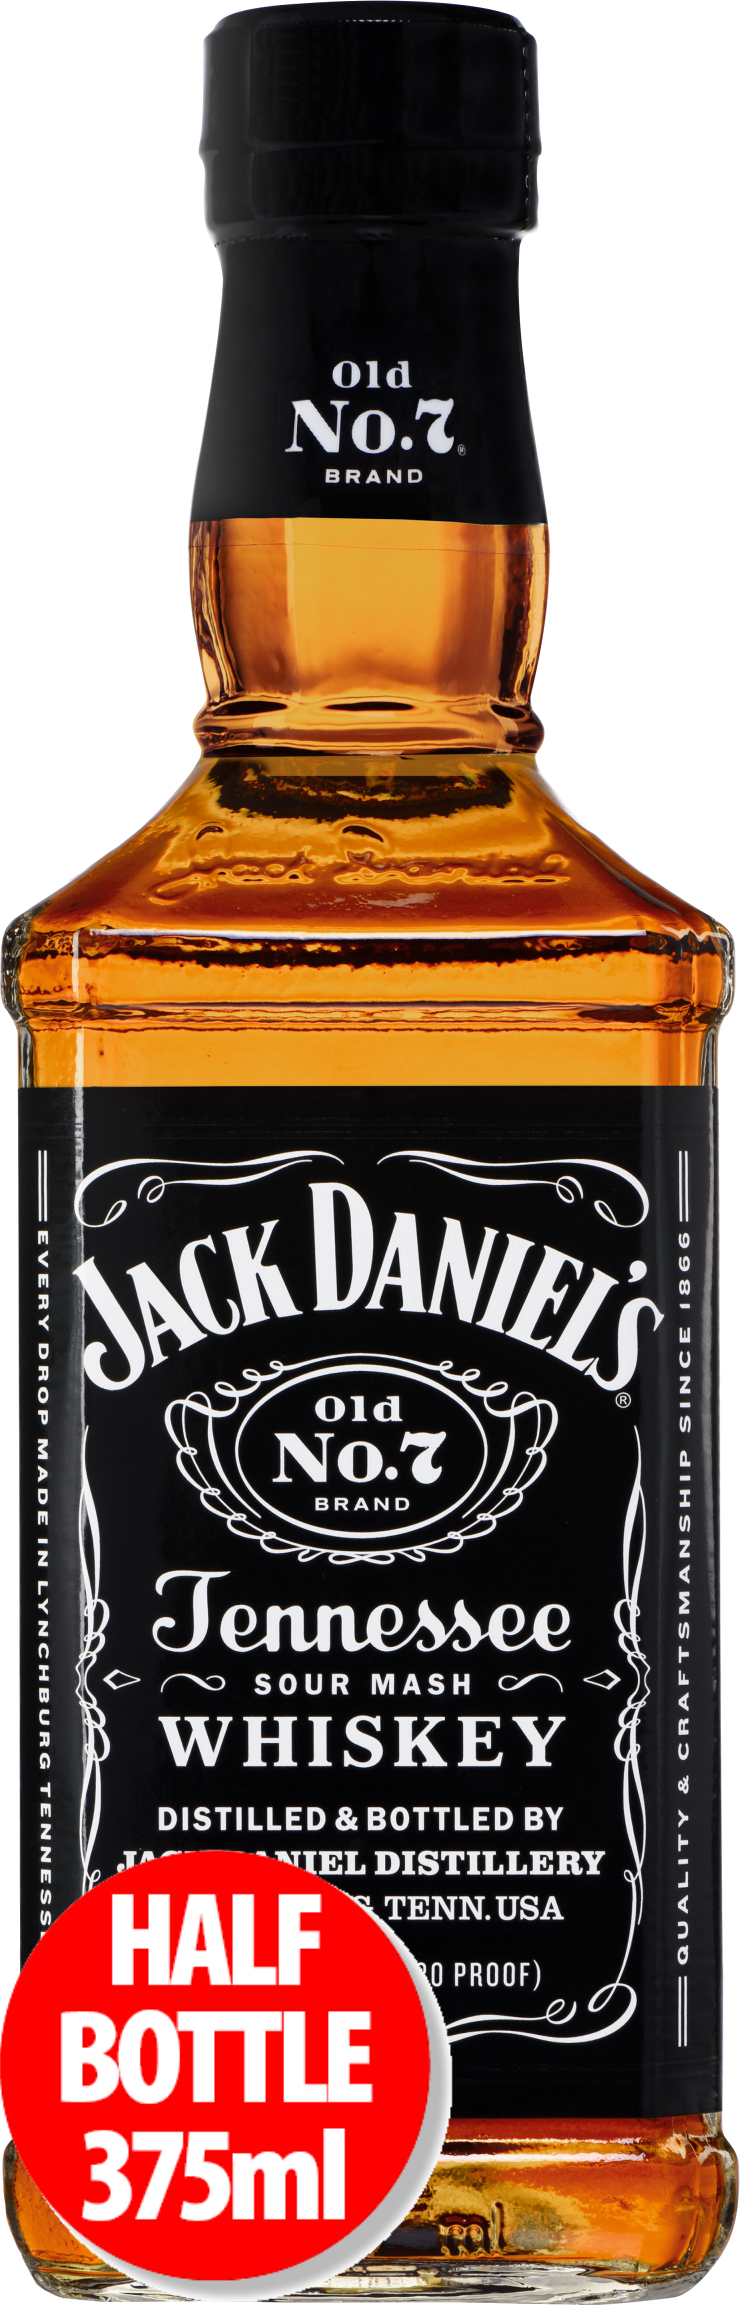 https://www.bottlebargains.com/images/sites/bottlebargains/labels/jack-daniel-s-tennessee-whiskey-375ml_1.jpg